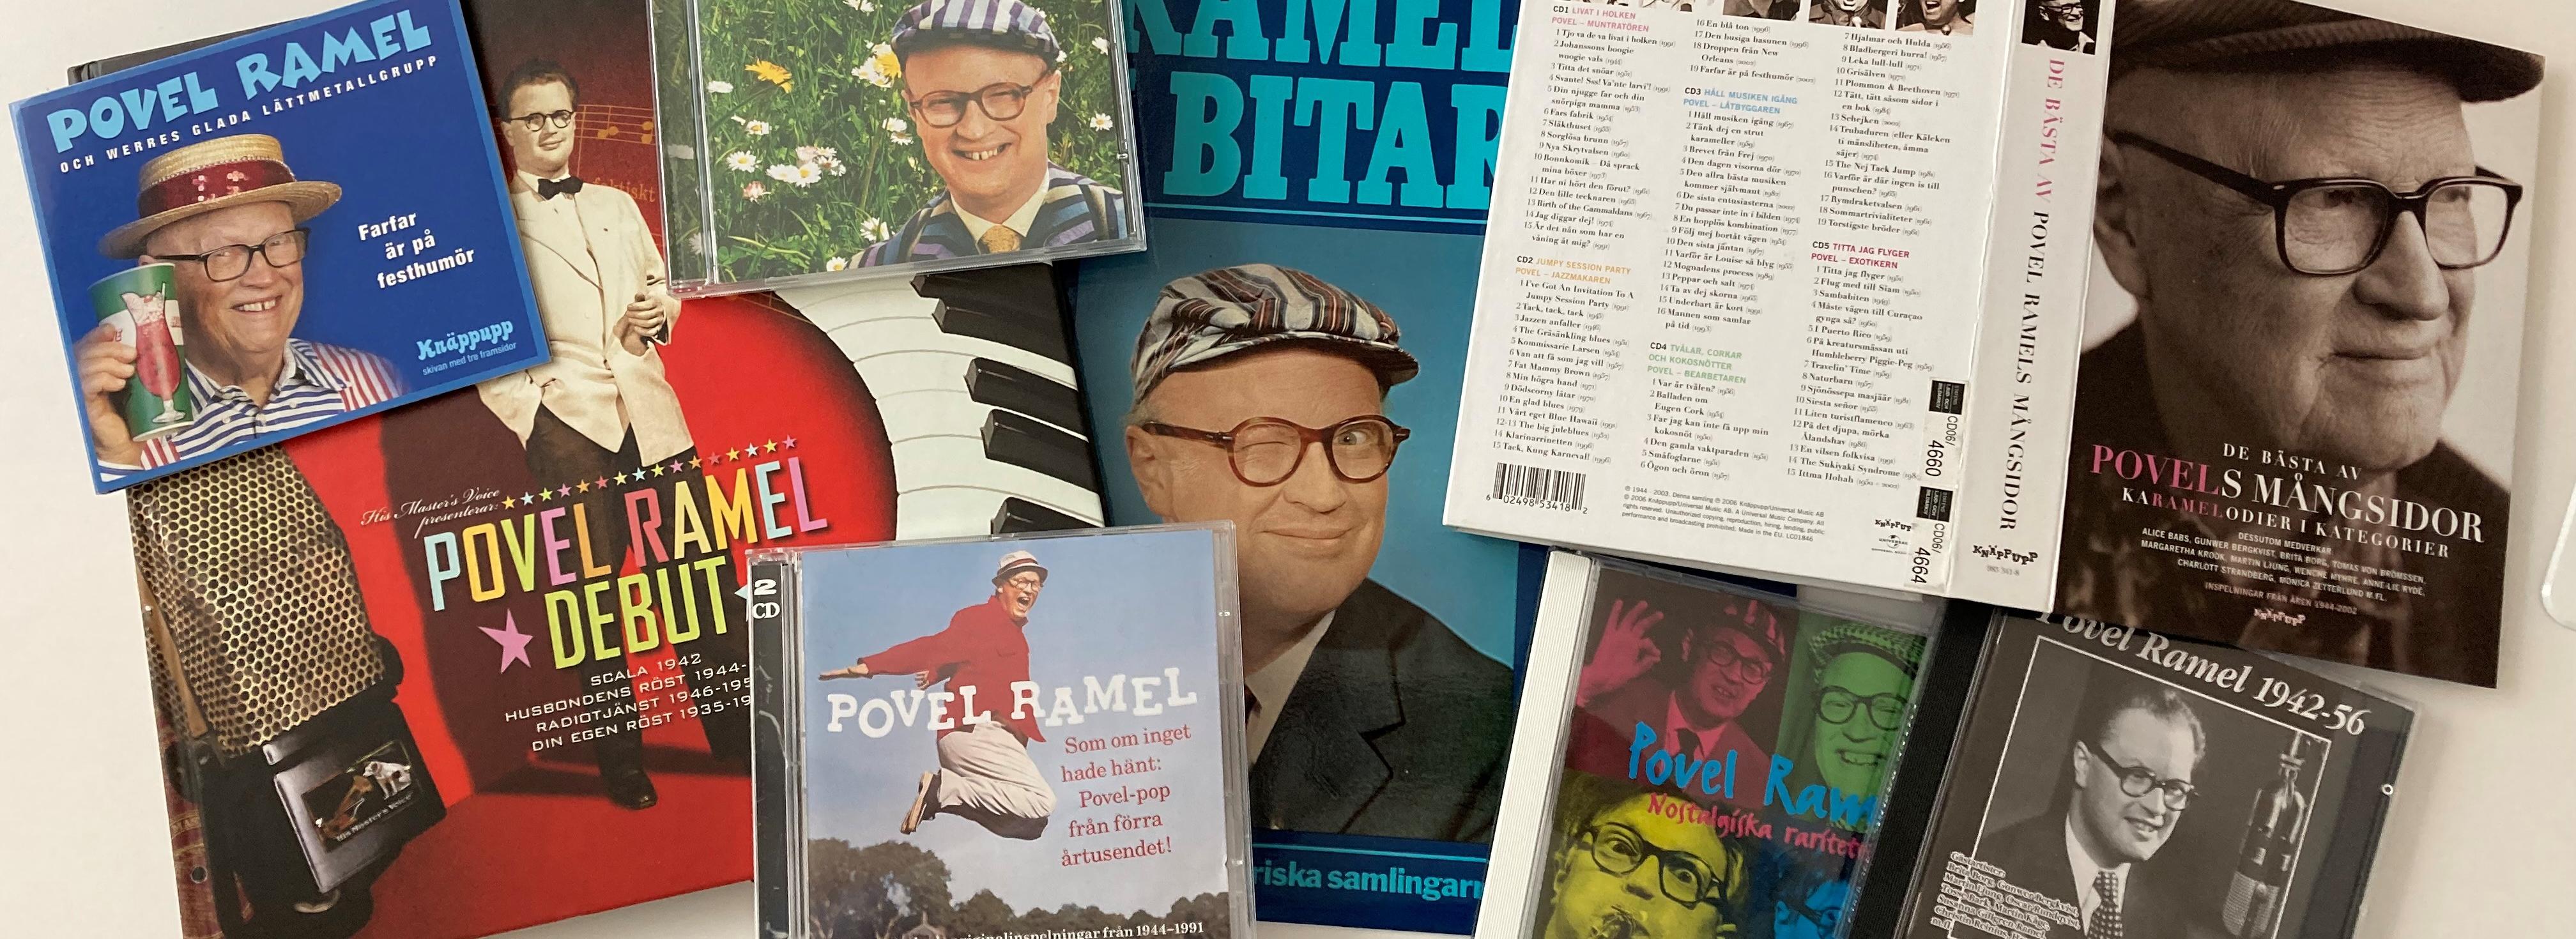 Kollage med många skivomslag med bilder av Povel Ramel i olika åldrar. 